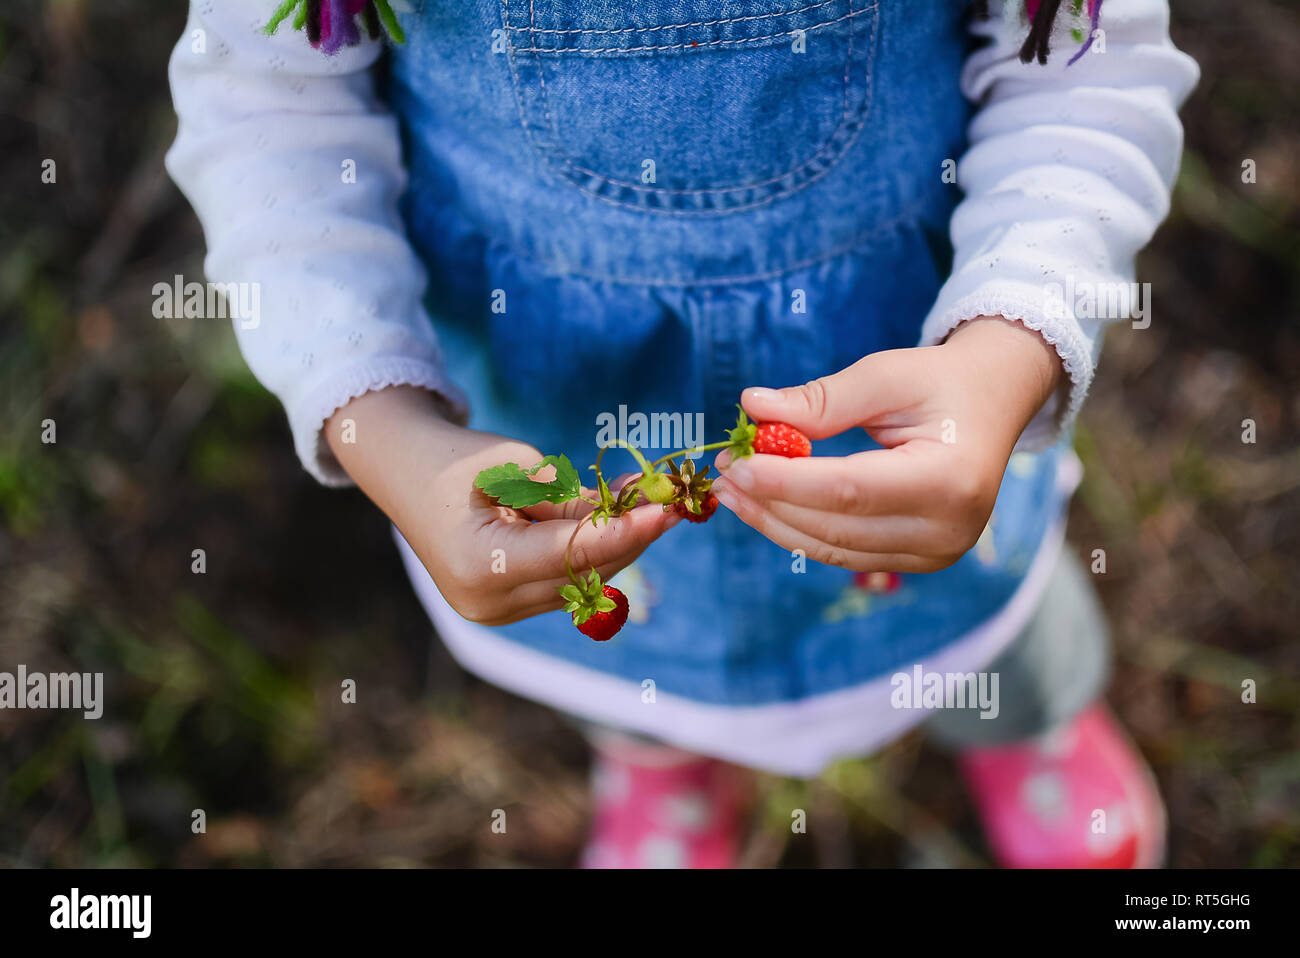 Mains de little girl holding les fraises des bois, vue partielle Banque D'Images